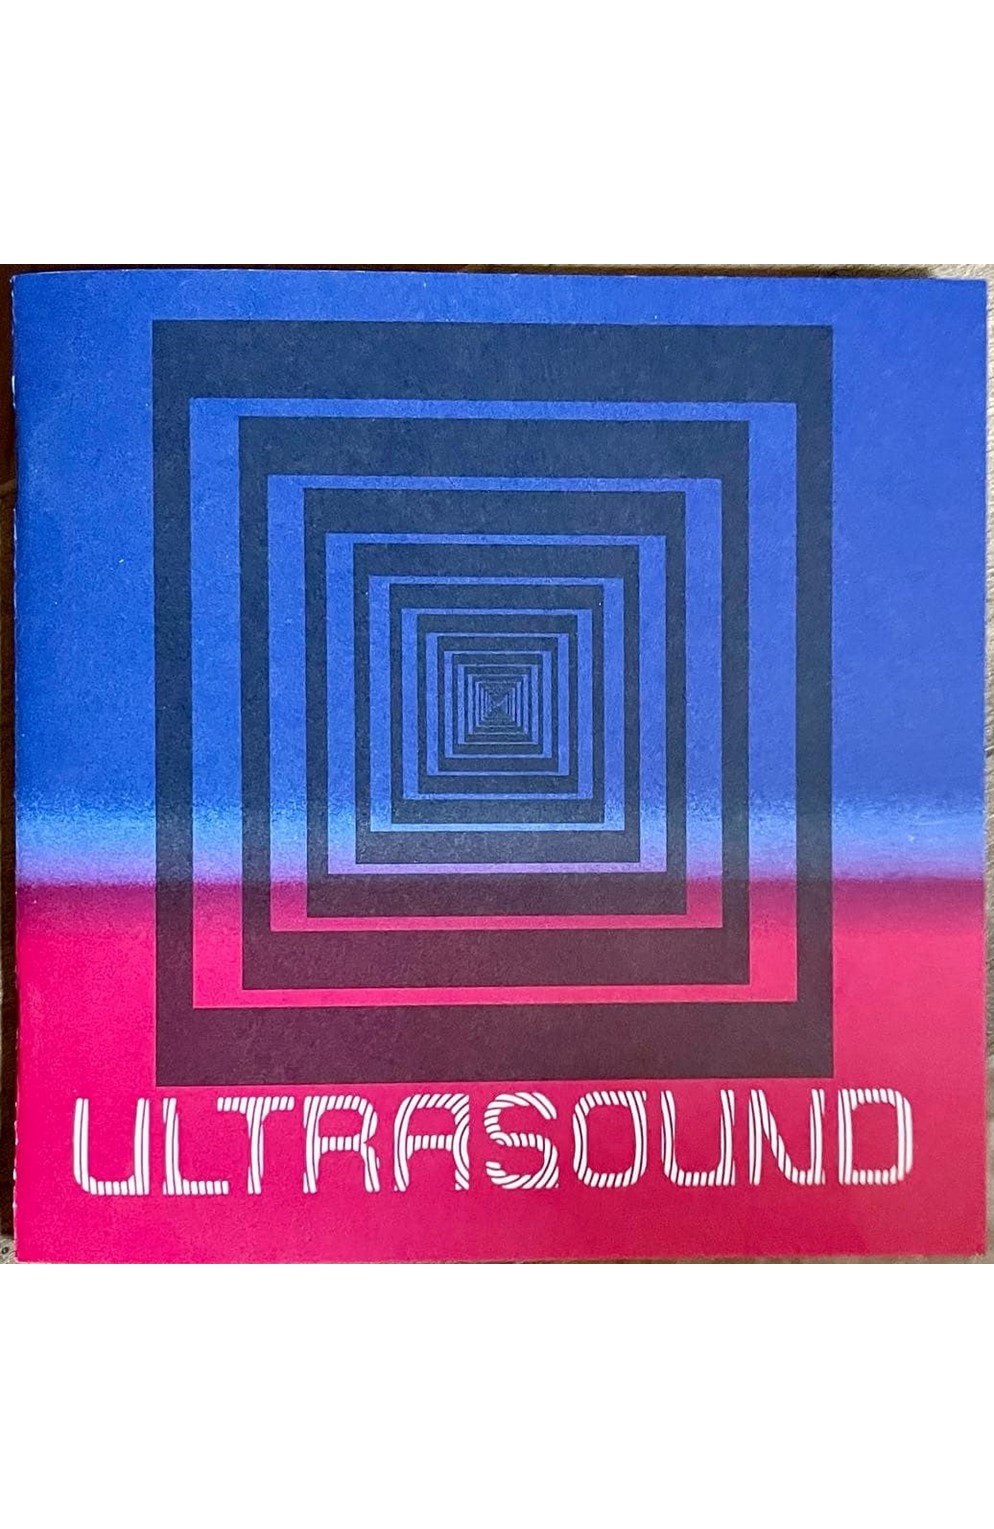 Ultrasound Zine